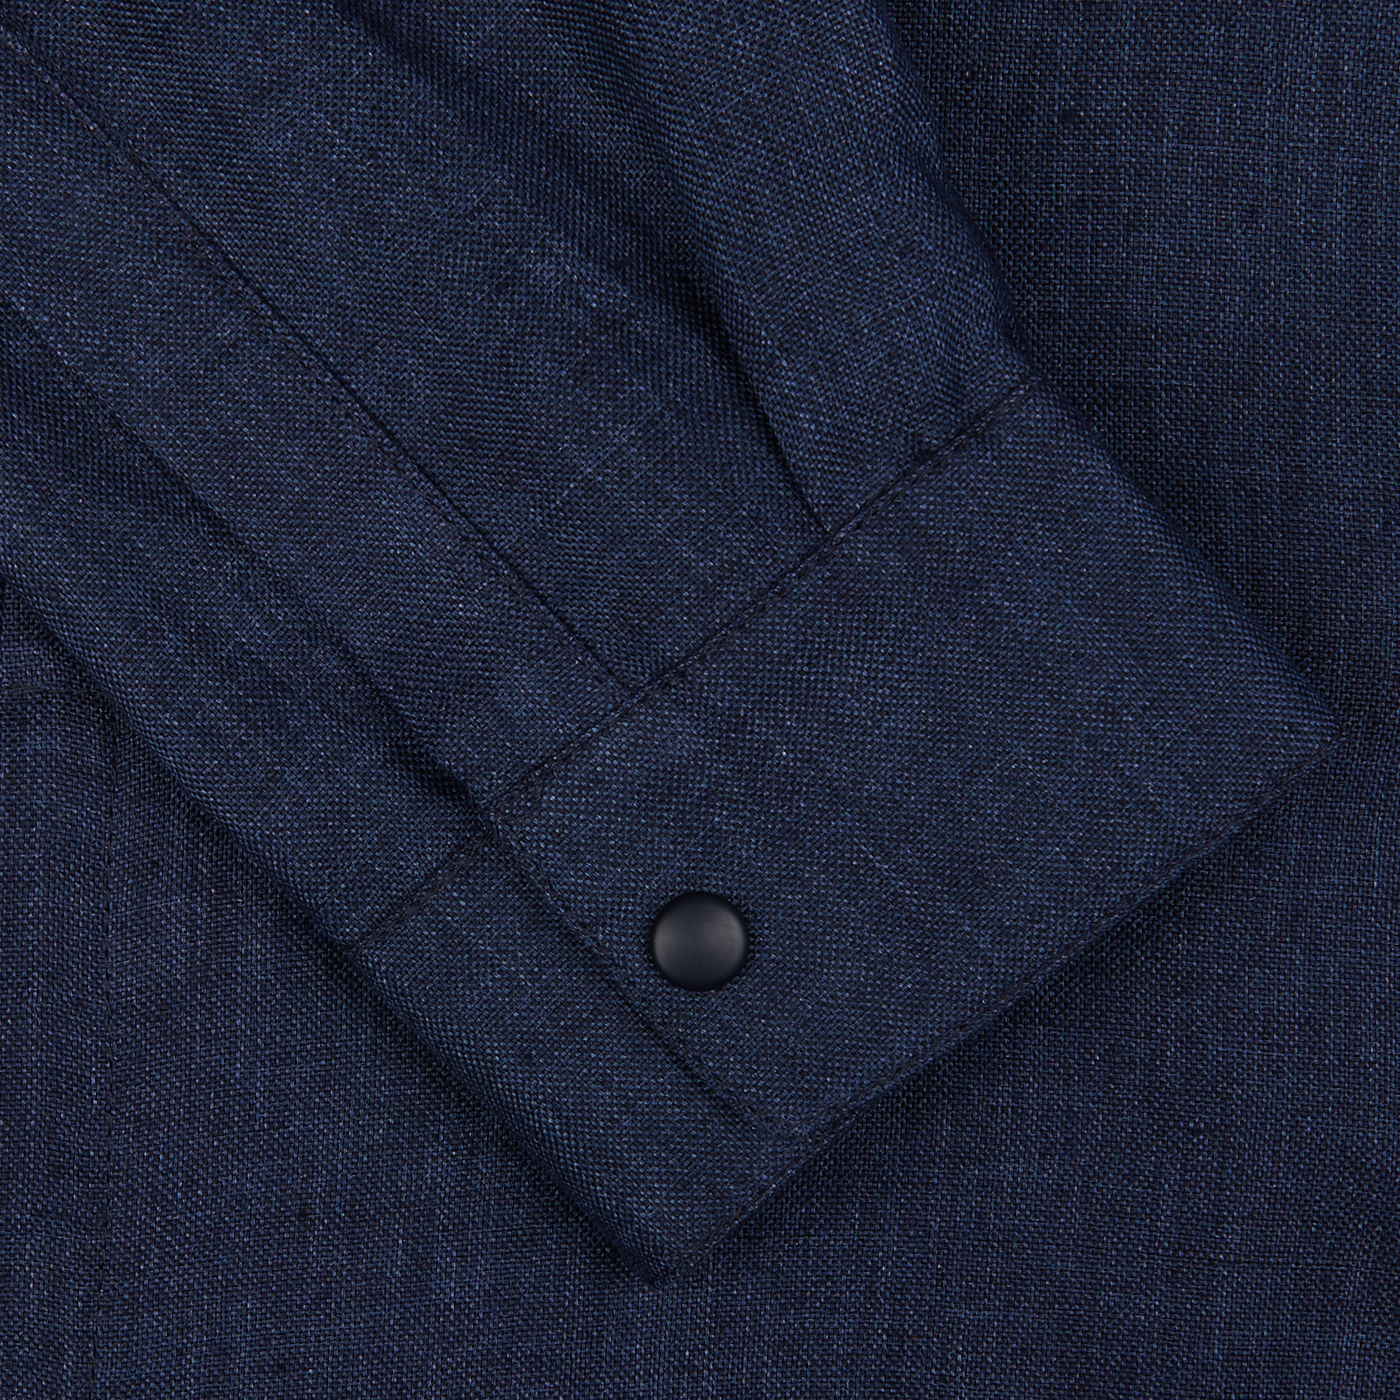 Close-up of a Mazzarelli dark blue organic linen overshirt cuff with a button.